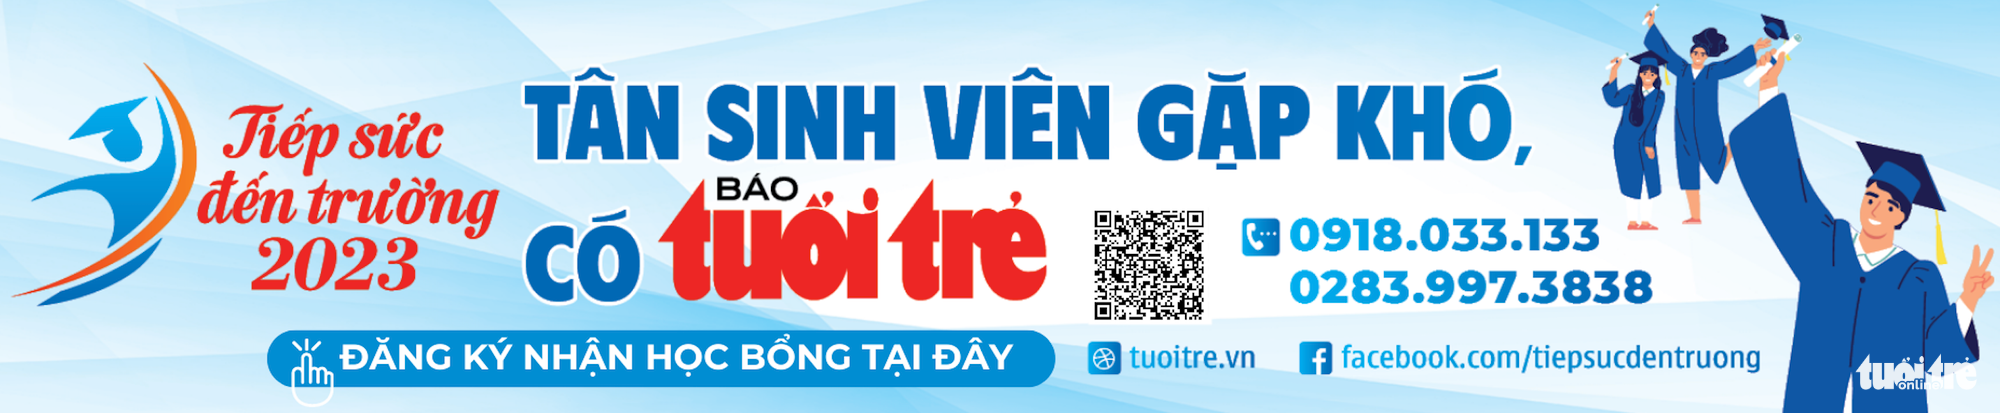 Hôm nay Tiếp sức đến trường đến với 105 tân sinh viên Quảng Nam - Đà Nẵng - Ảnh 2.